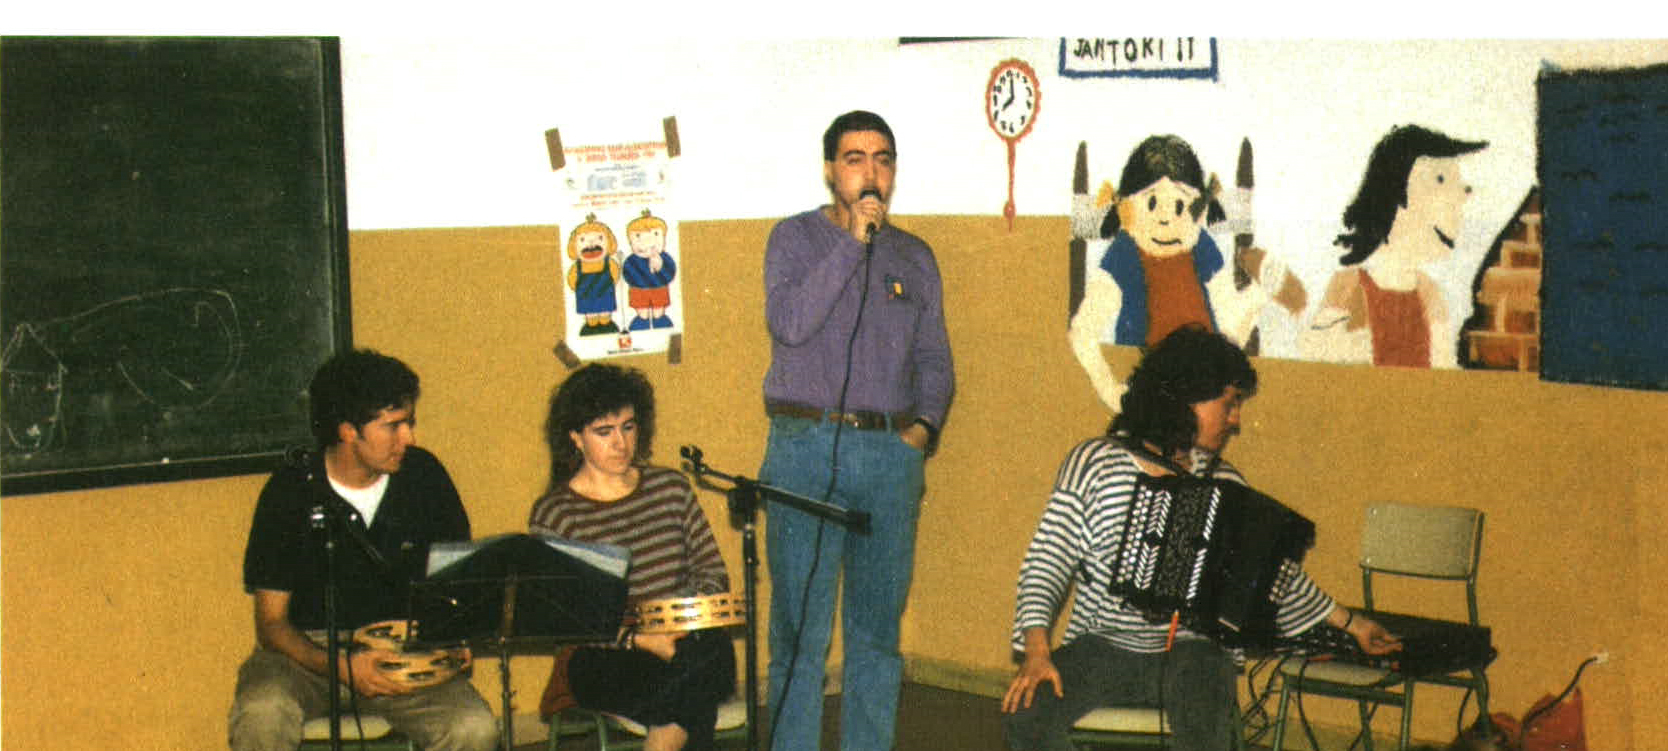 Durangaldeko bertso eskola 1991